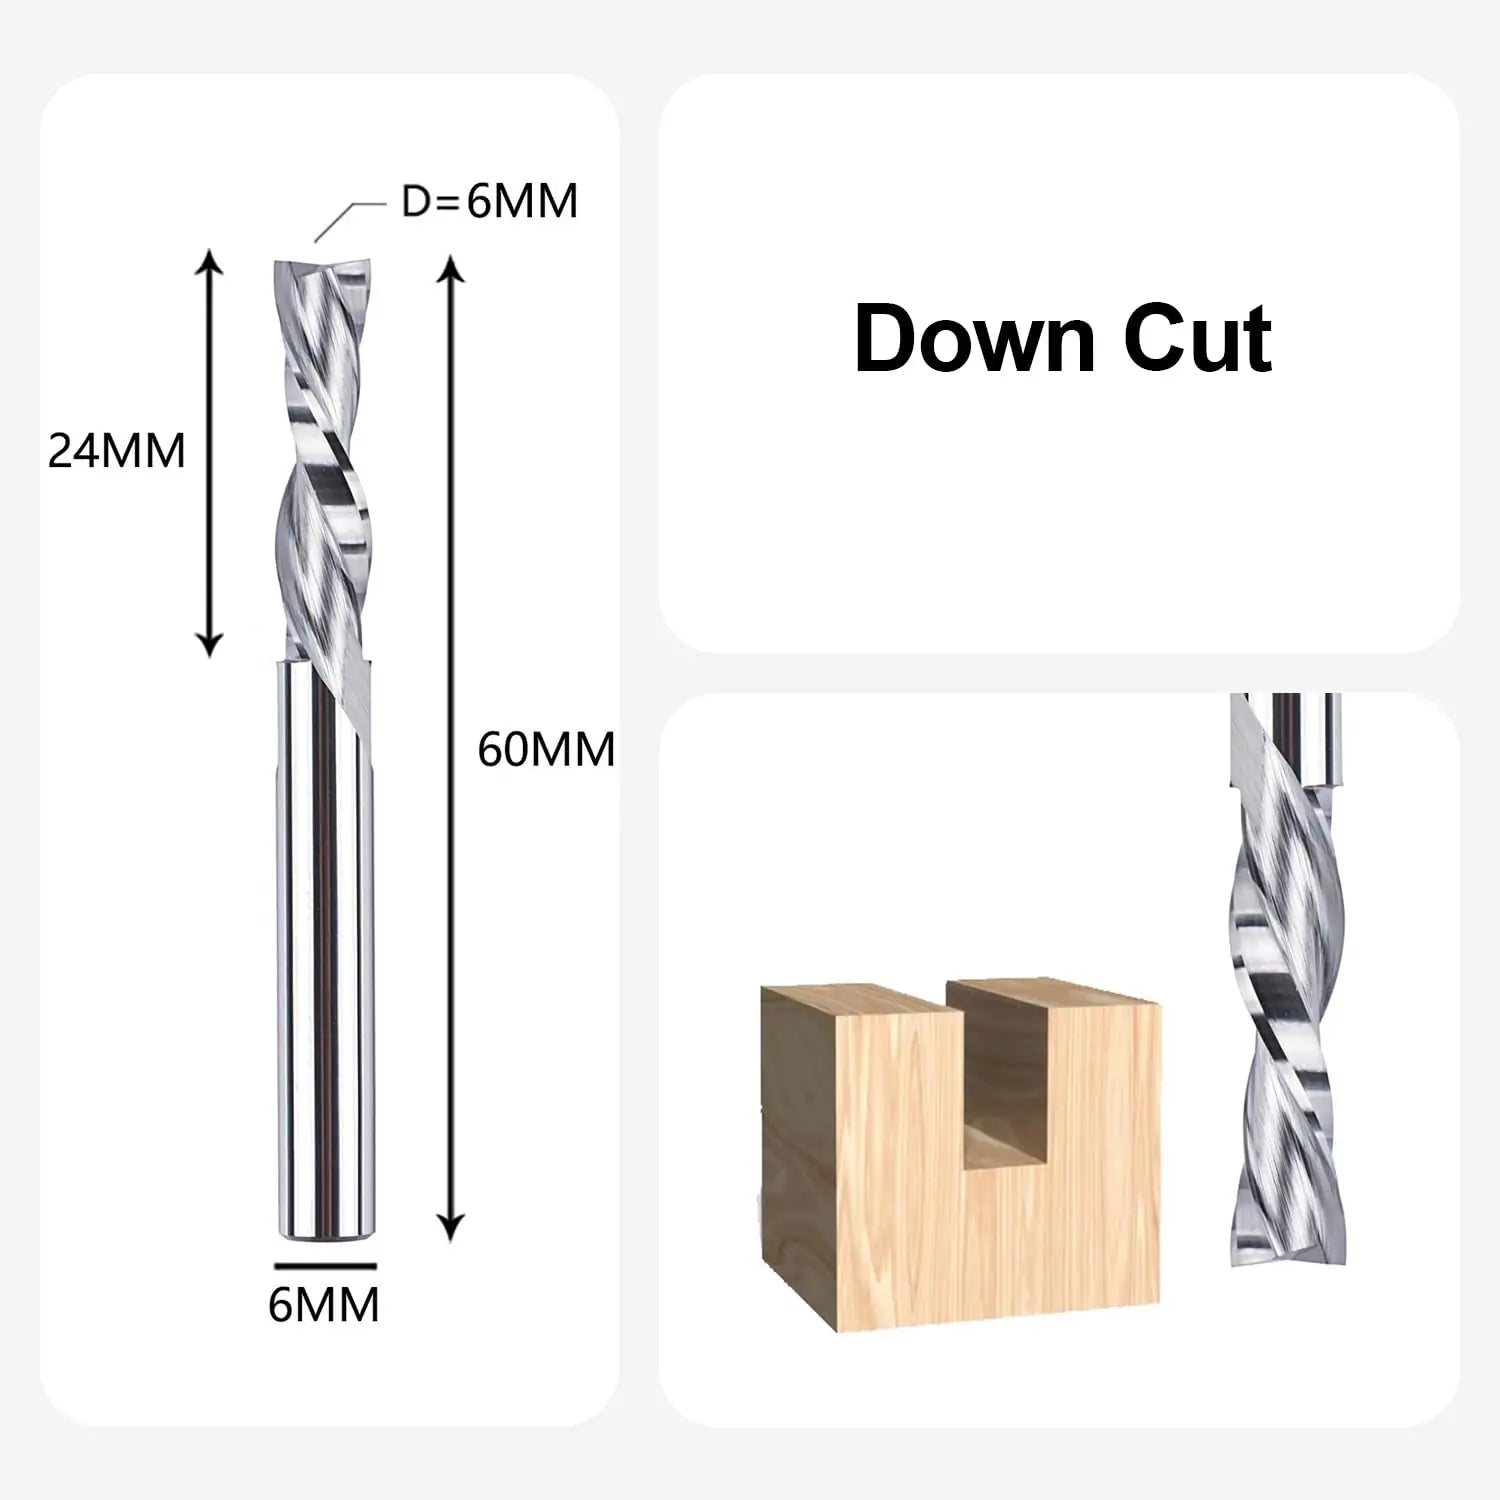 SpeTool DE Downcut CNC Spiralfräser VHM 2 Flöten Oberfräse Fräser Holz mit 6 mm Schnittdurchmesser, 6 mm Schaft, Router Bit zum Schneiden von Holz